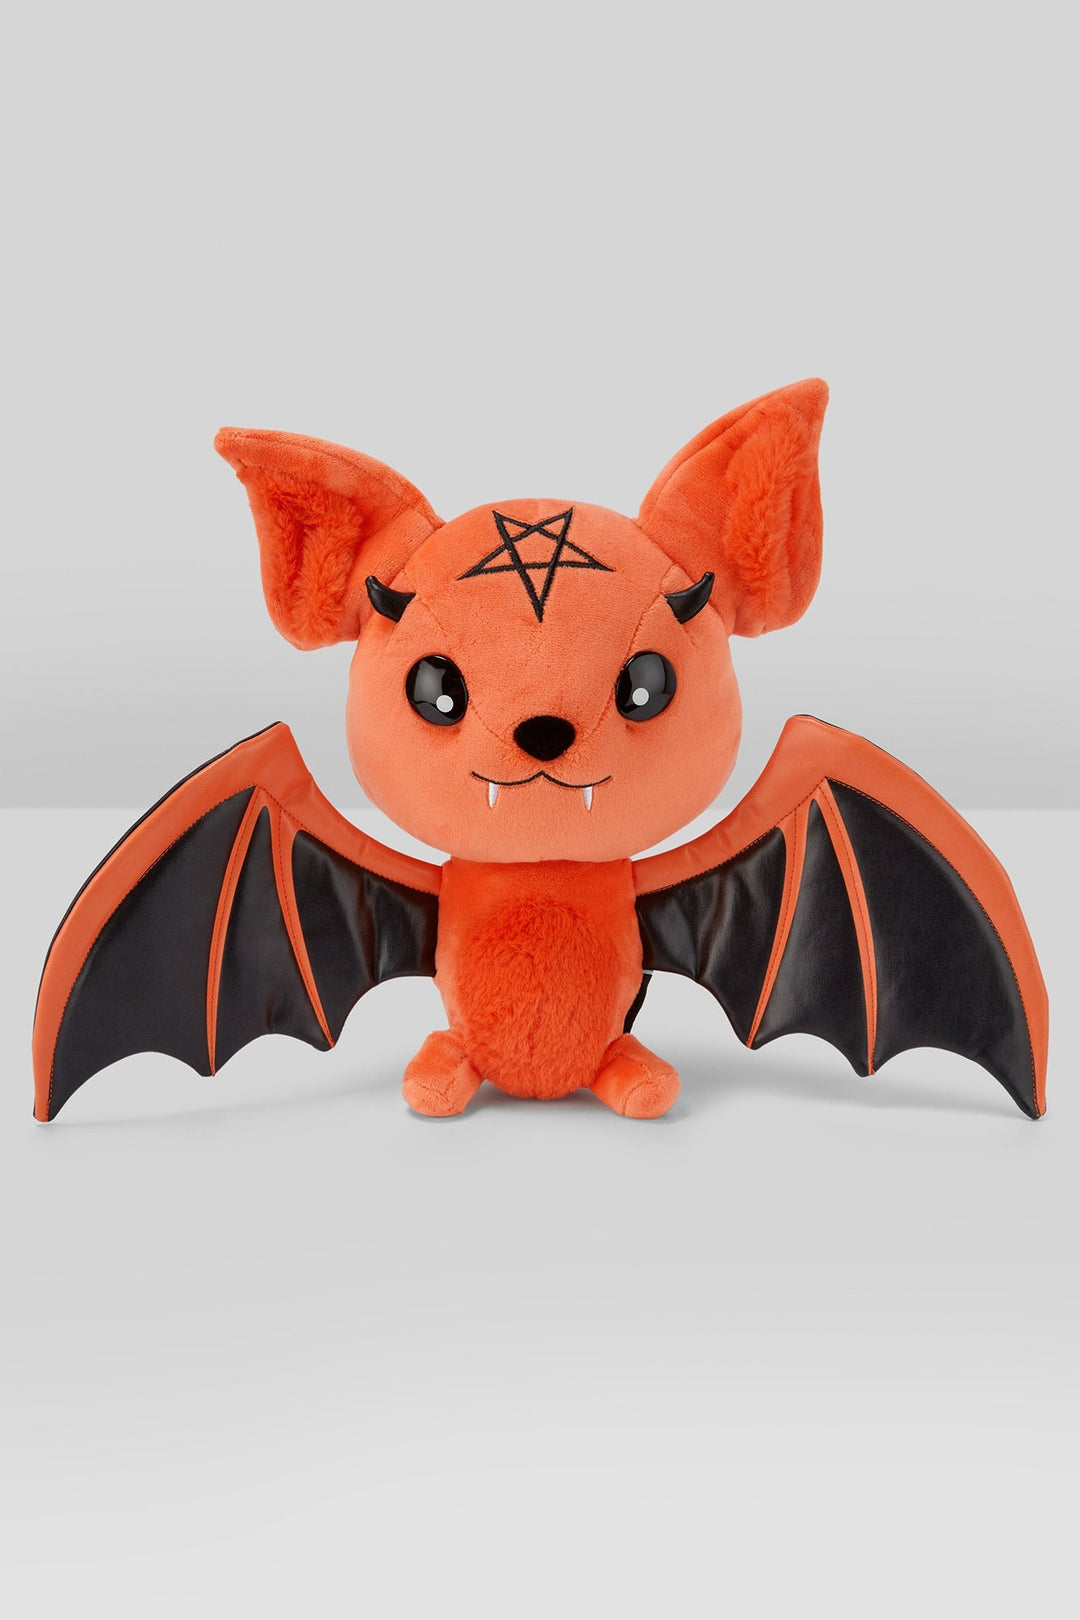 gothic pumpkin bat plushie toy